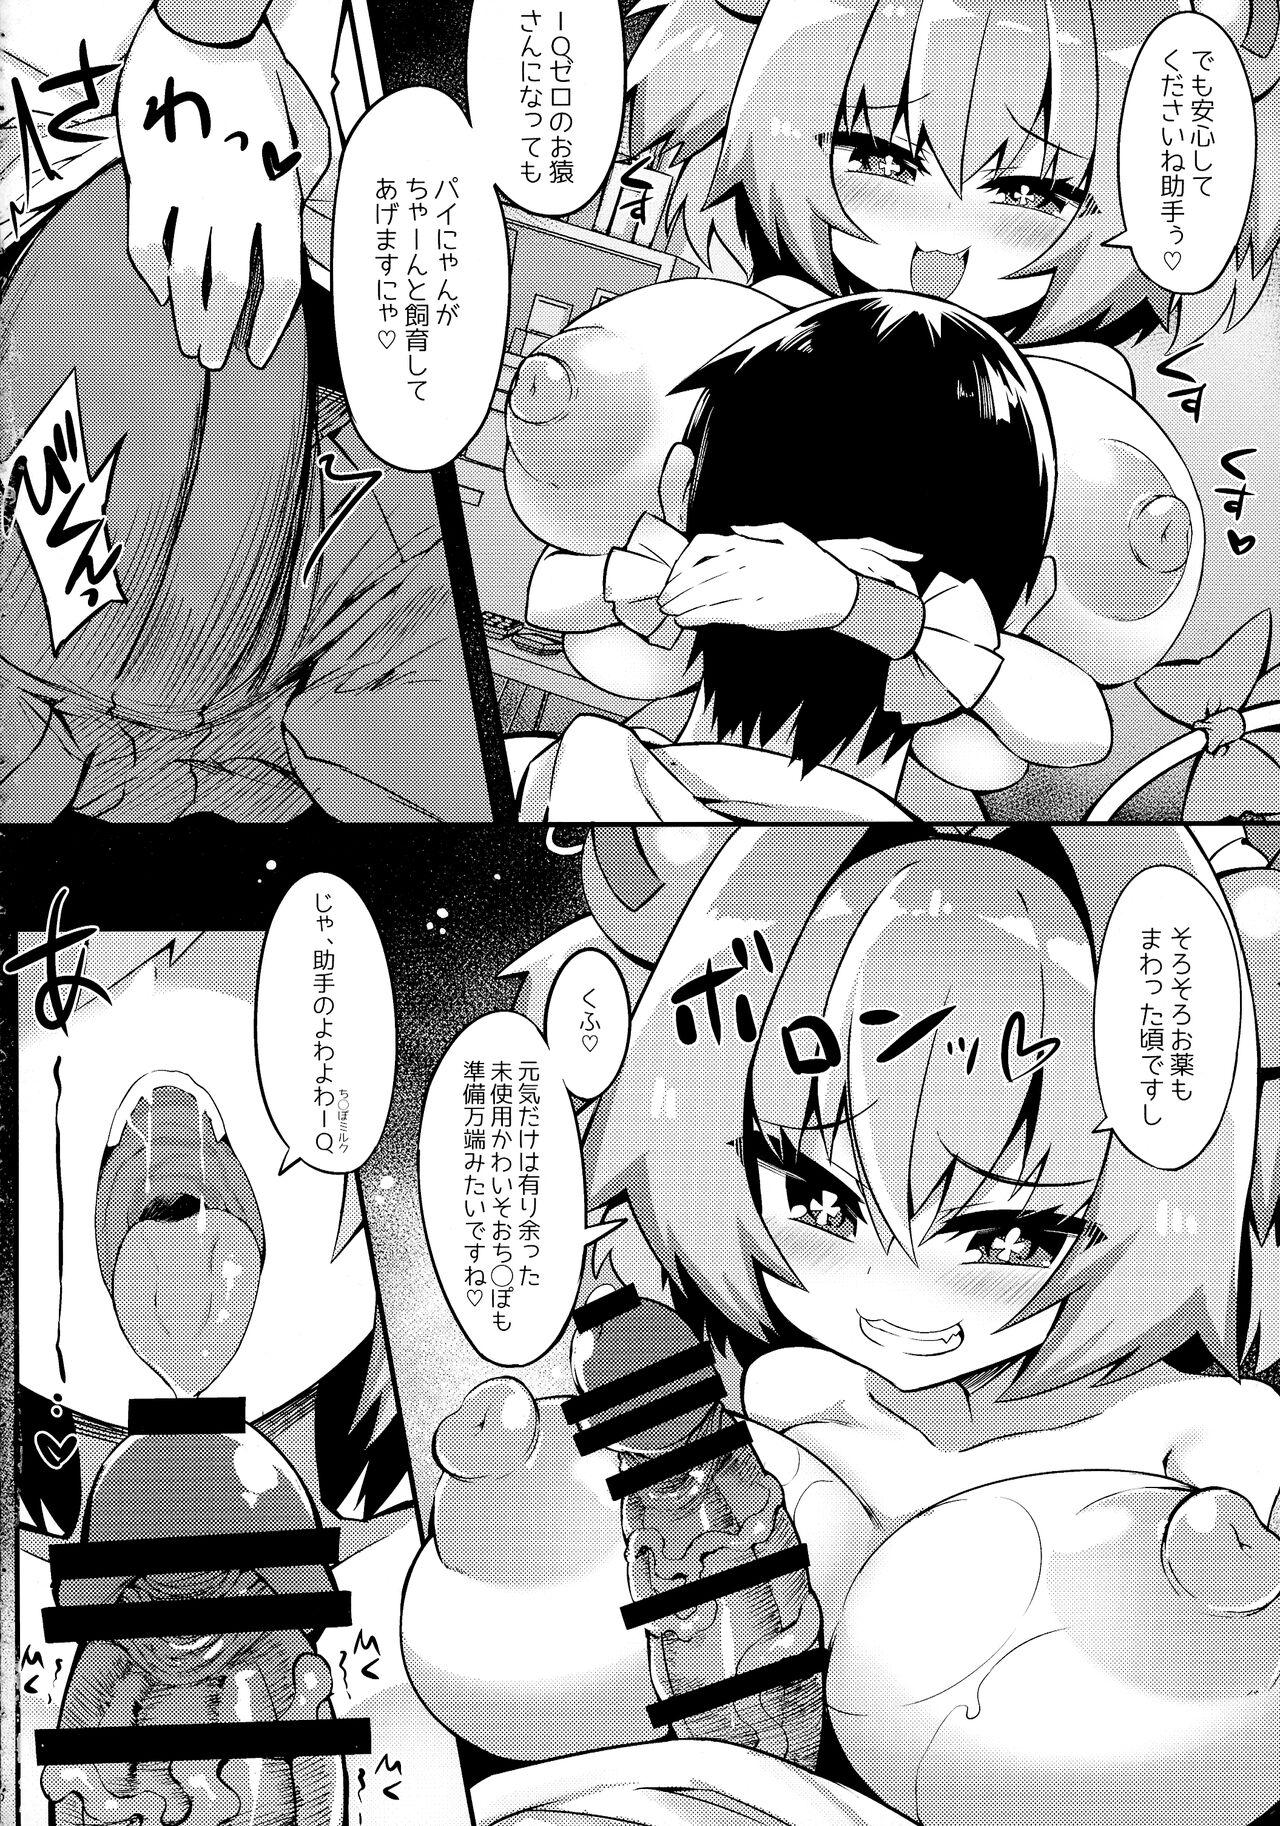 Culito Paigaki no IQ ga 0 ni Naru made Milk o Shiboritoru Hon - Bomber girl Camporn - Page 8